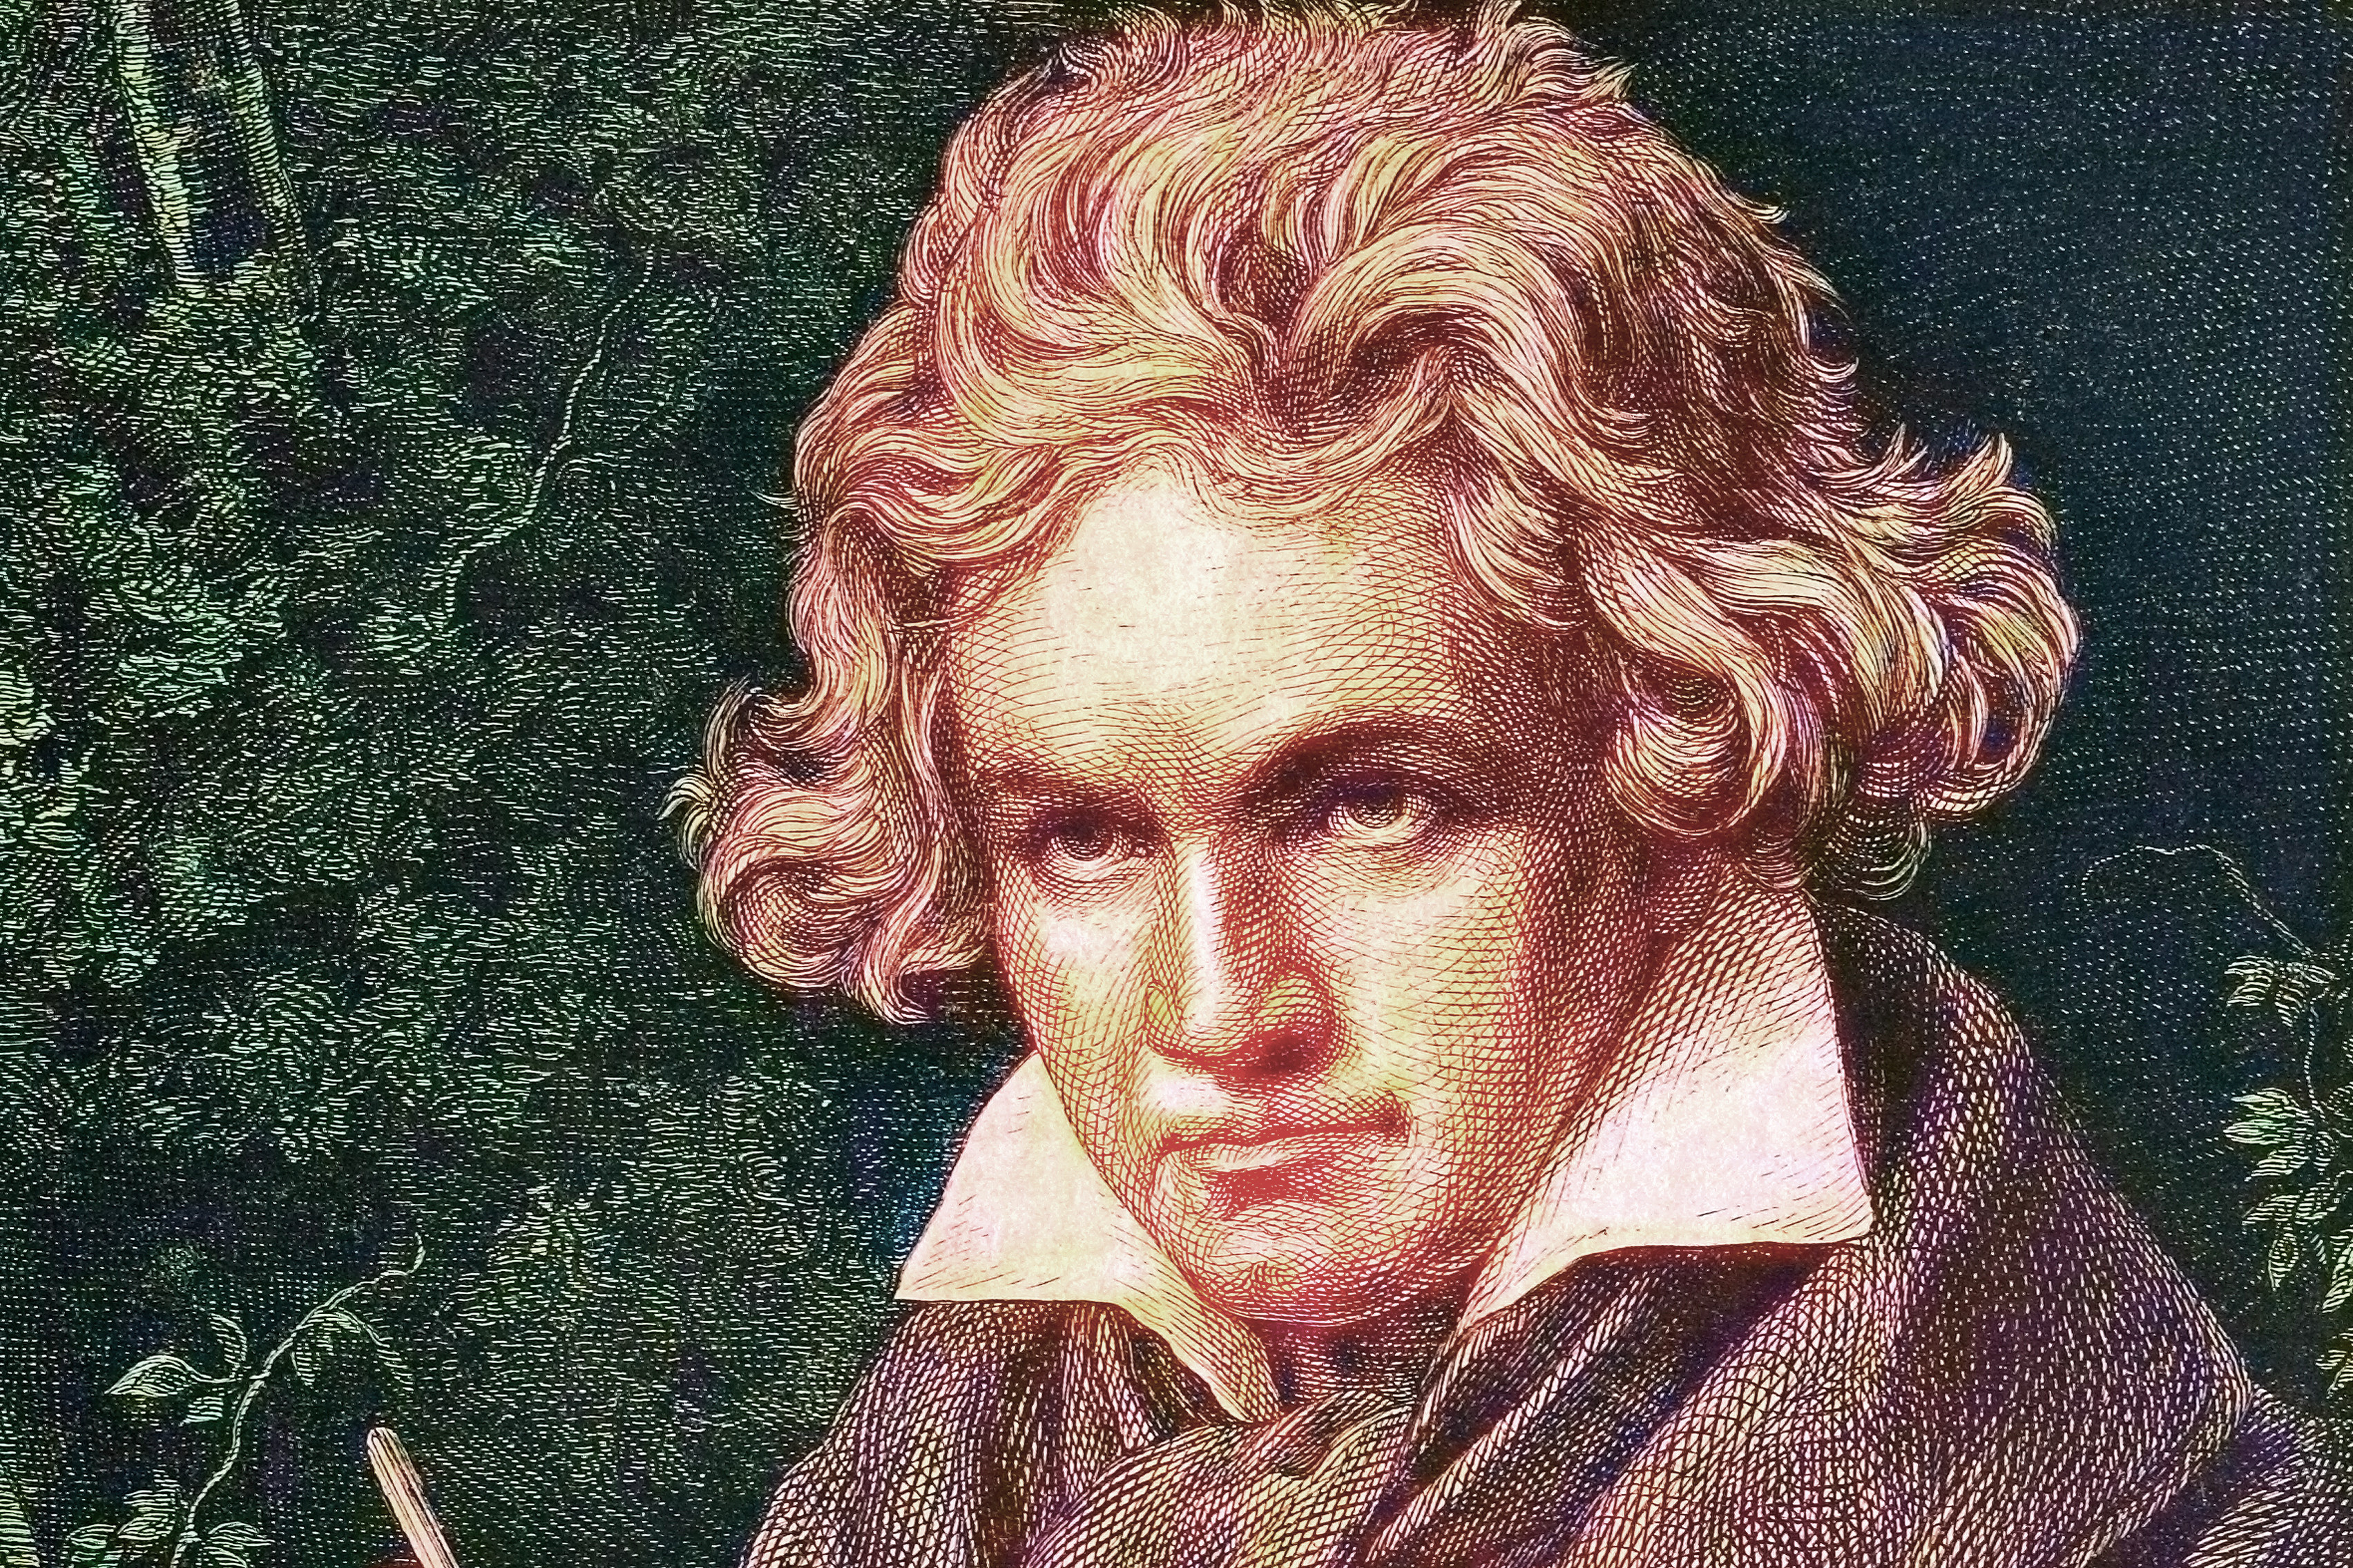 Döbbenetes titok derült ki Beethoven egészségéről és haláláról